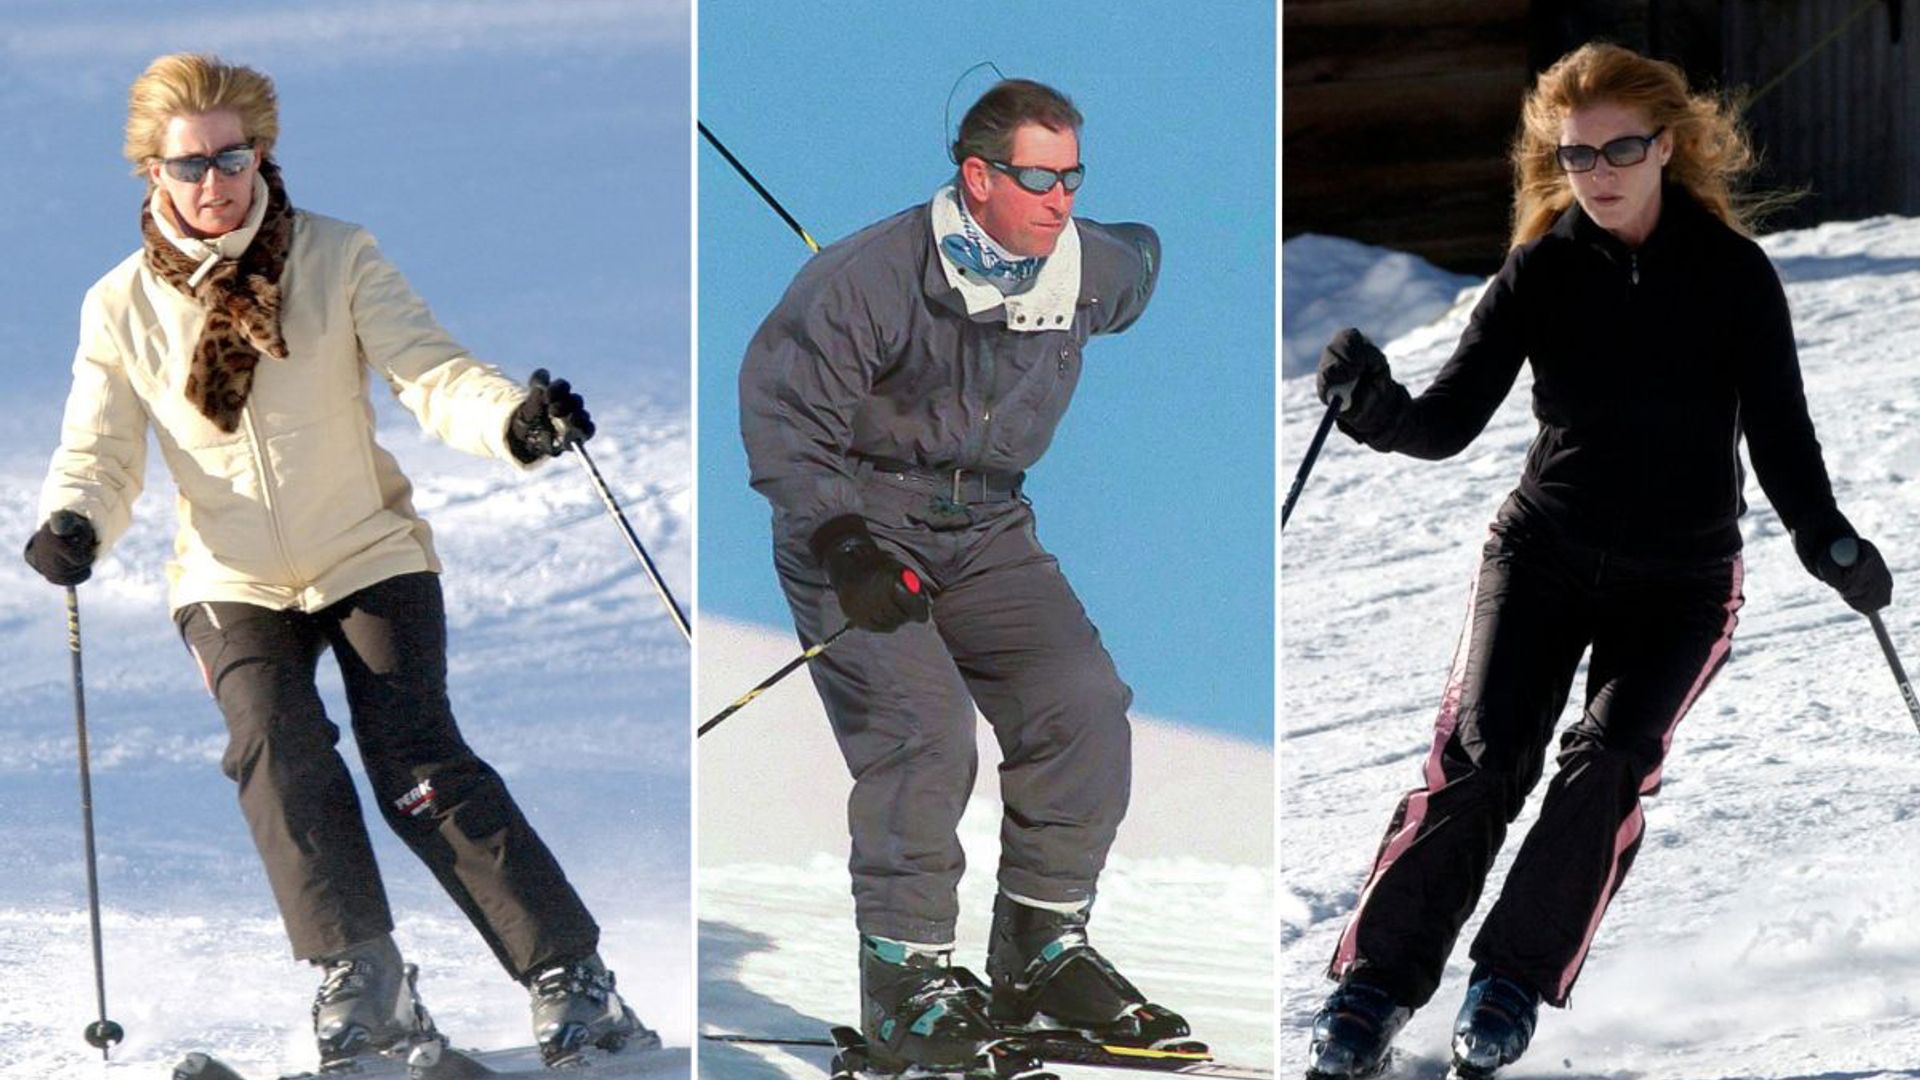 royal skiing injuries